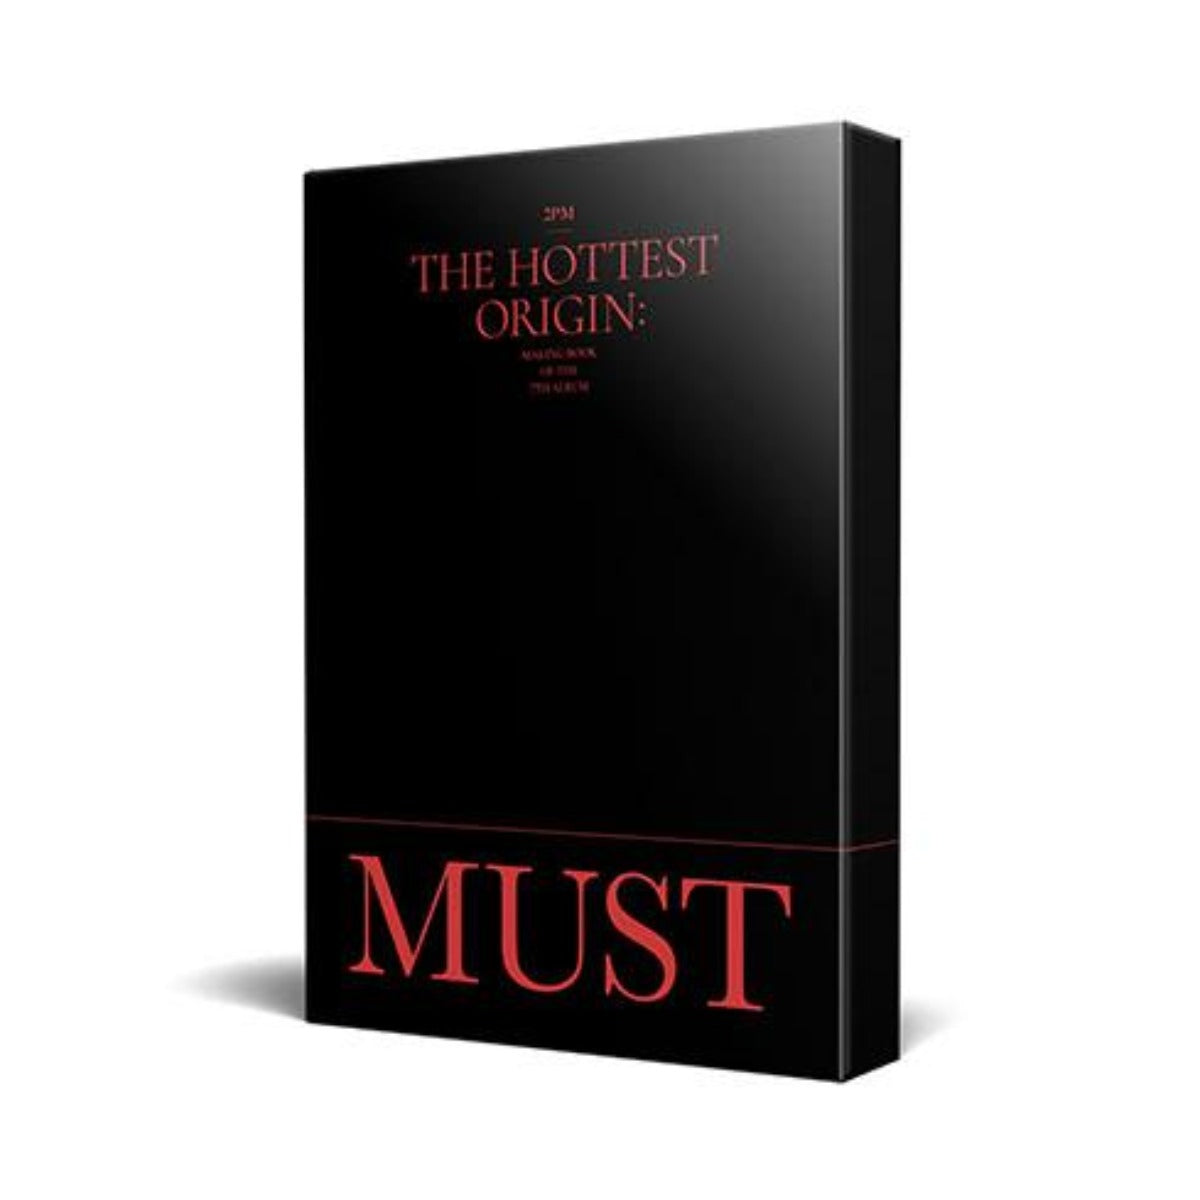 2PM The Hottest Origin: MUST Making Book